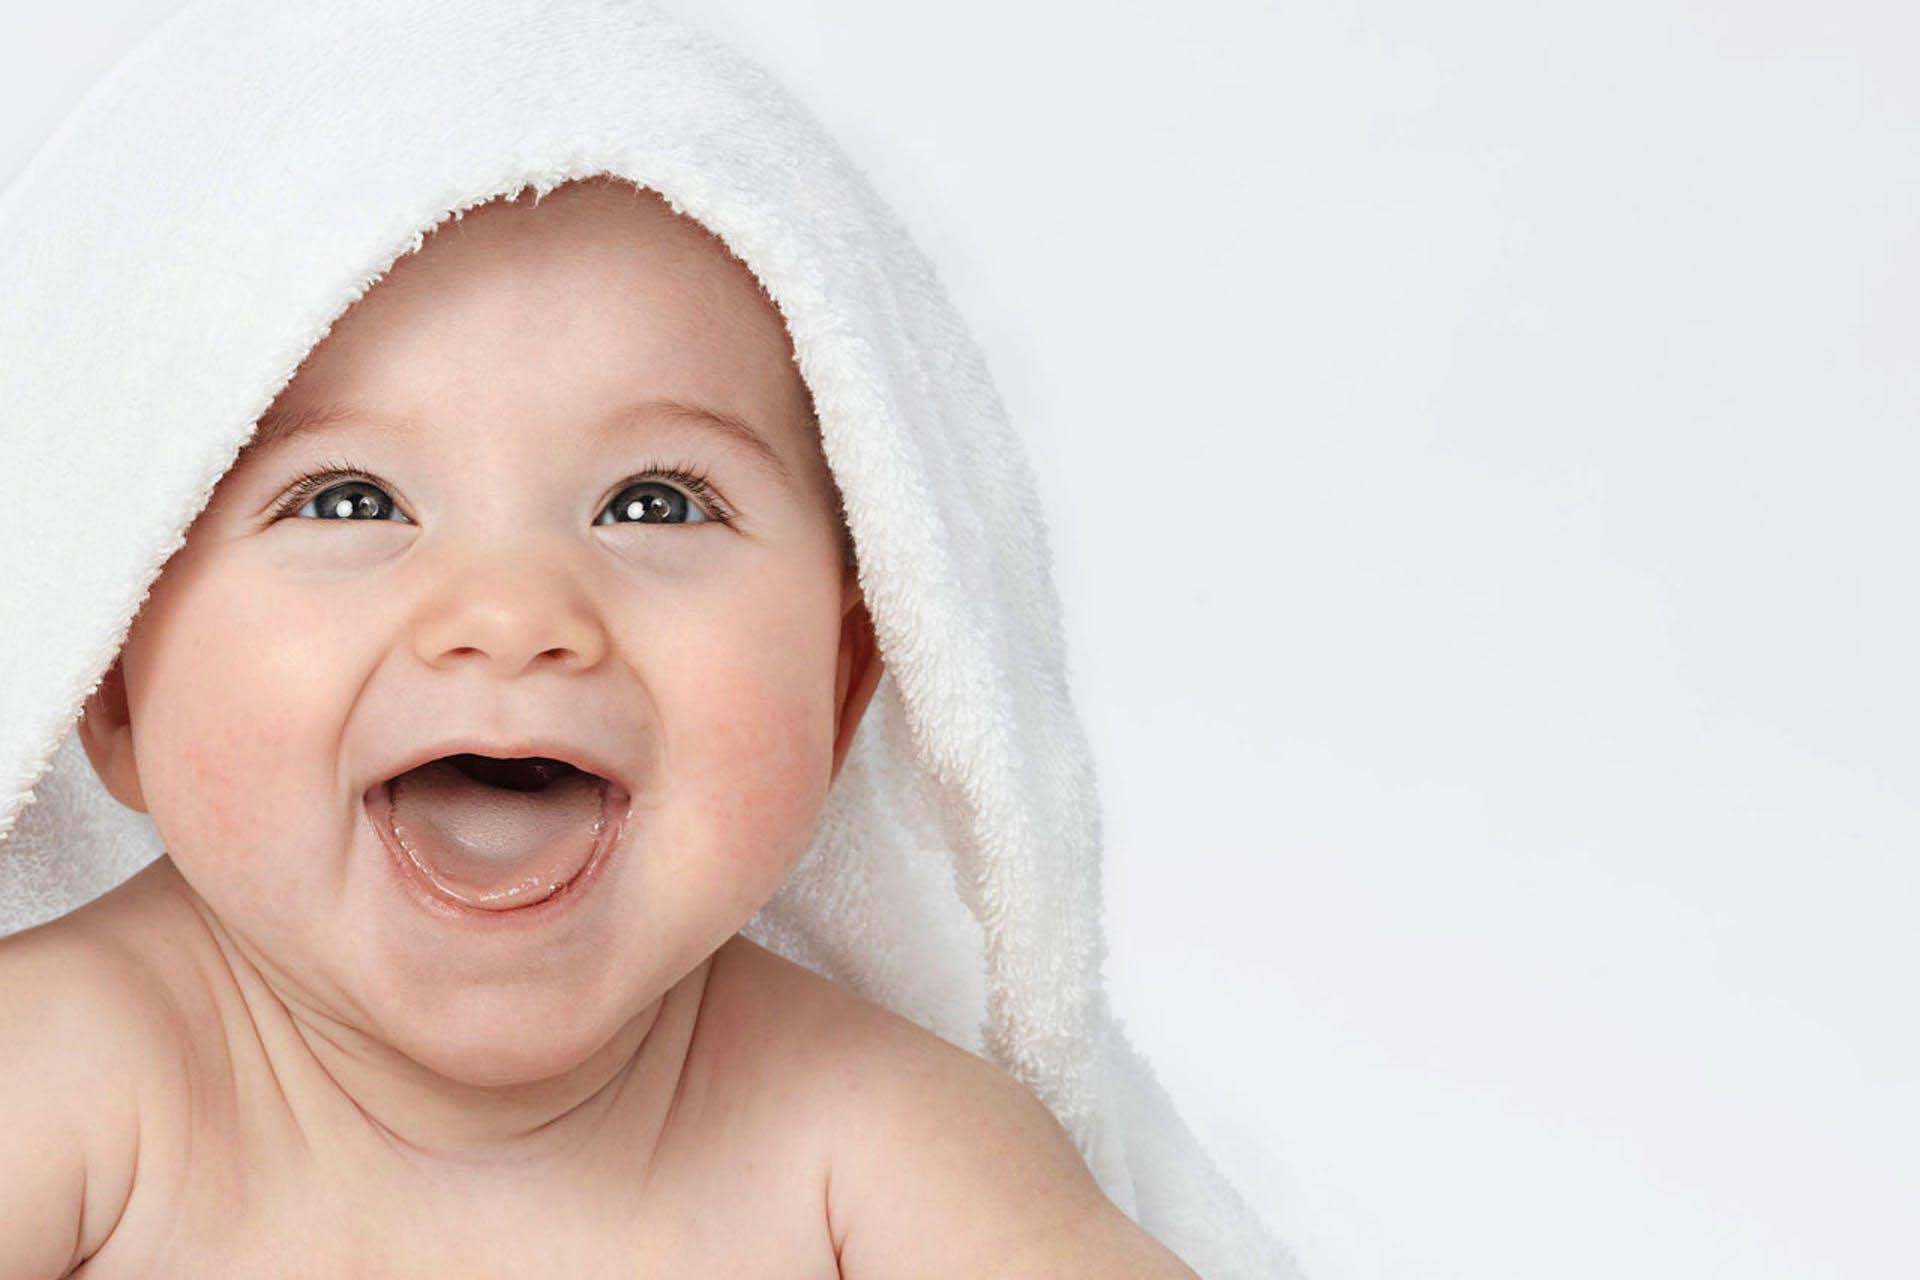 “давим лыбу”: когда ребенок начинает улыбаться и как ускорить этот процесс?